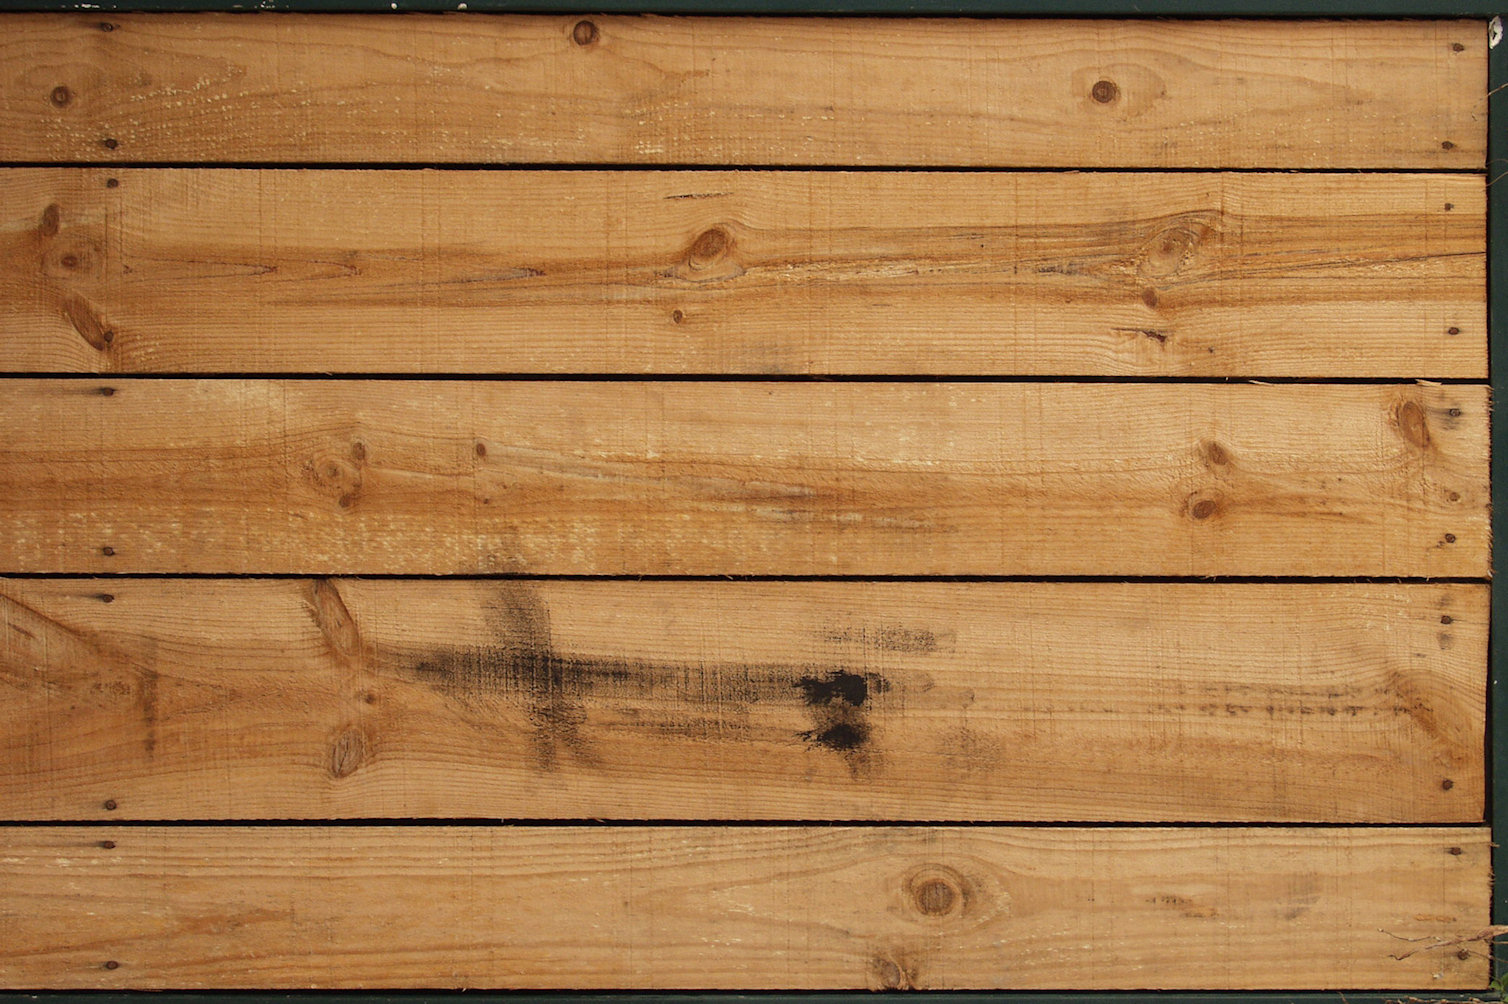 Mẫu vân gỗ nằm đem lại cảm giác gần gũi và tự nhiên. Với các chi tiết vân gỗ liên tục, nó tạo nên một không gian ấm áp và mộc mạc cho bất cứ dự án nào. Hãy lắng nghe tiếng rít từ những chi tiết gỗ và tận hưởng sự tự nhiên của mẫu vân gỗ nằm này.